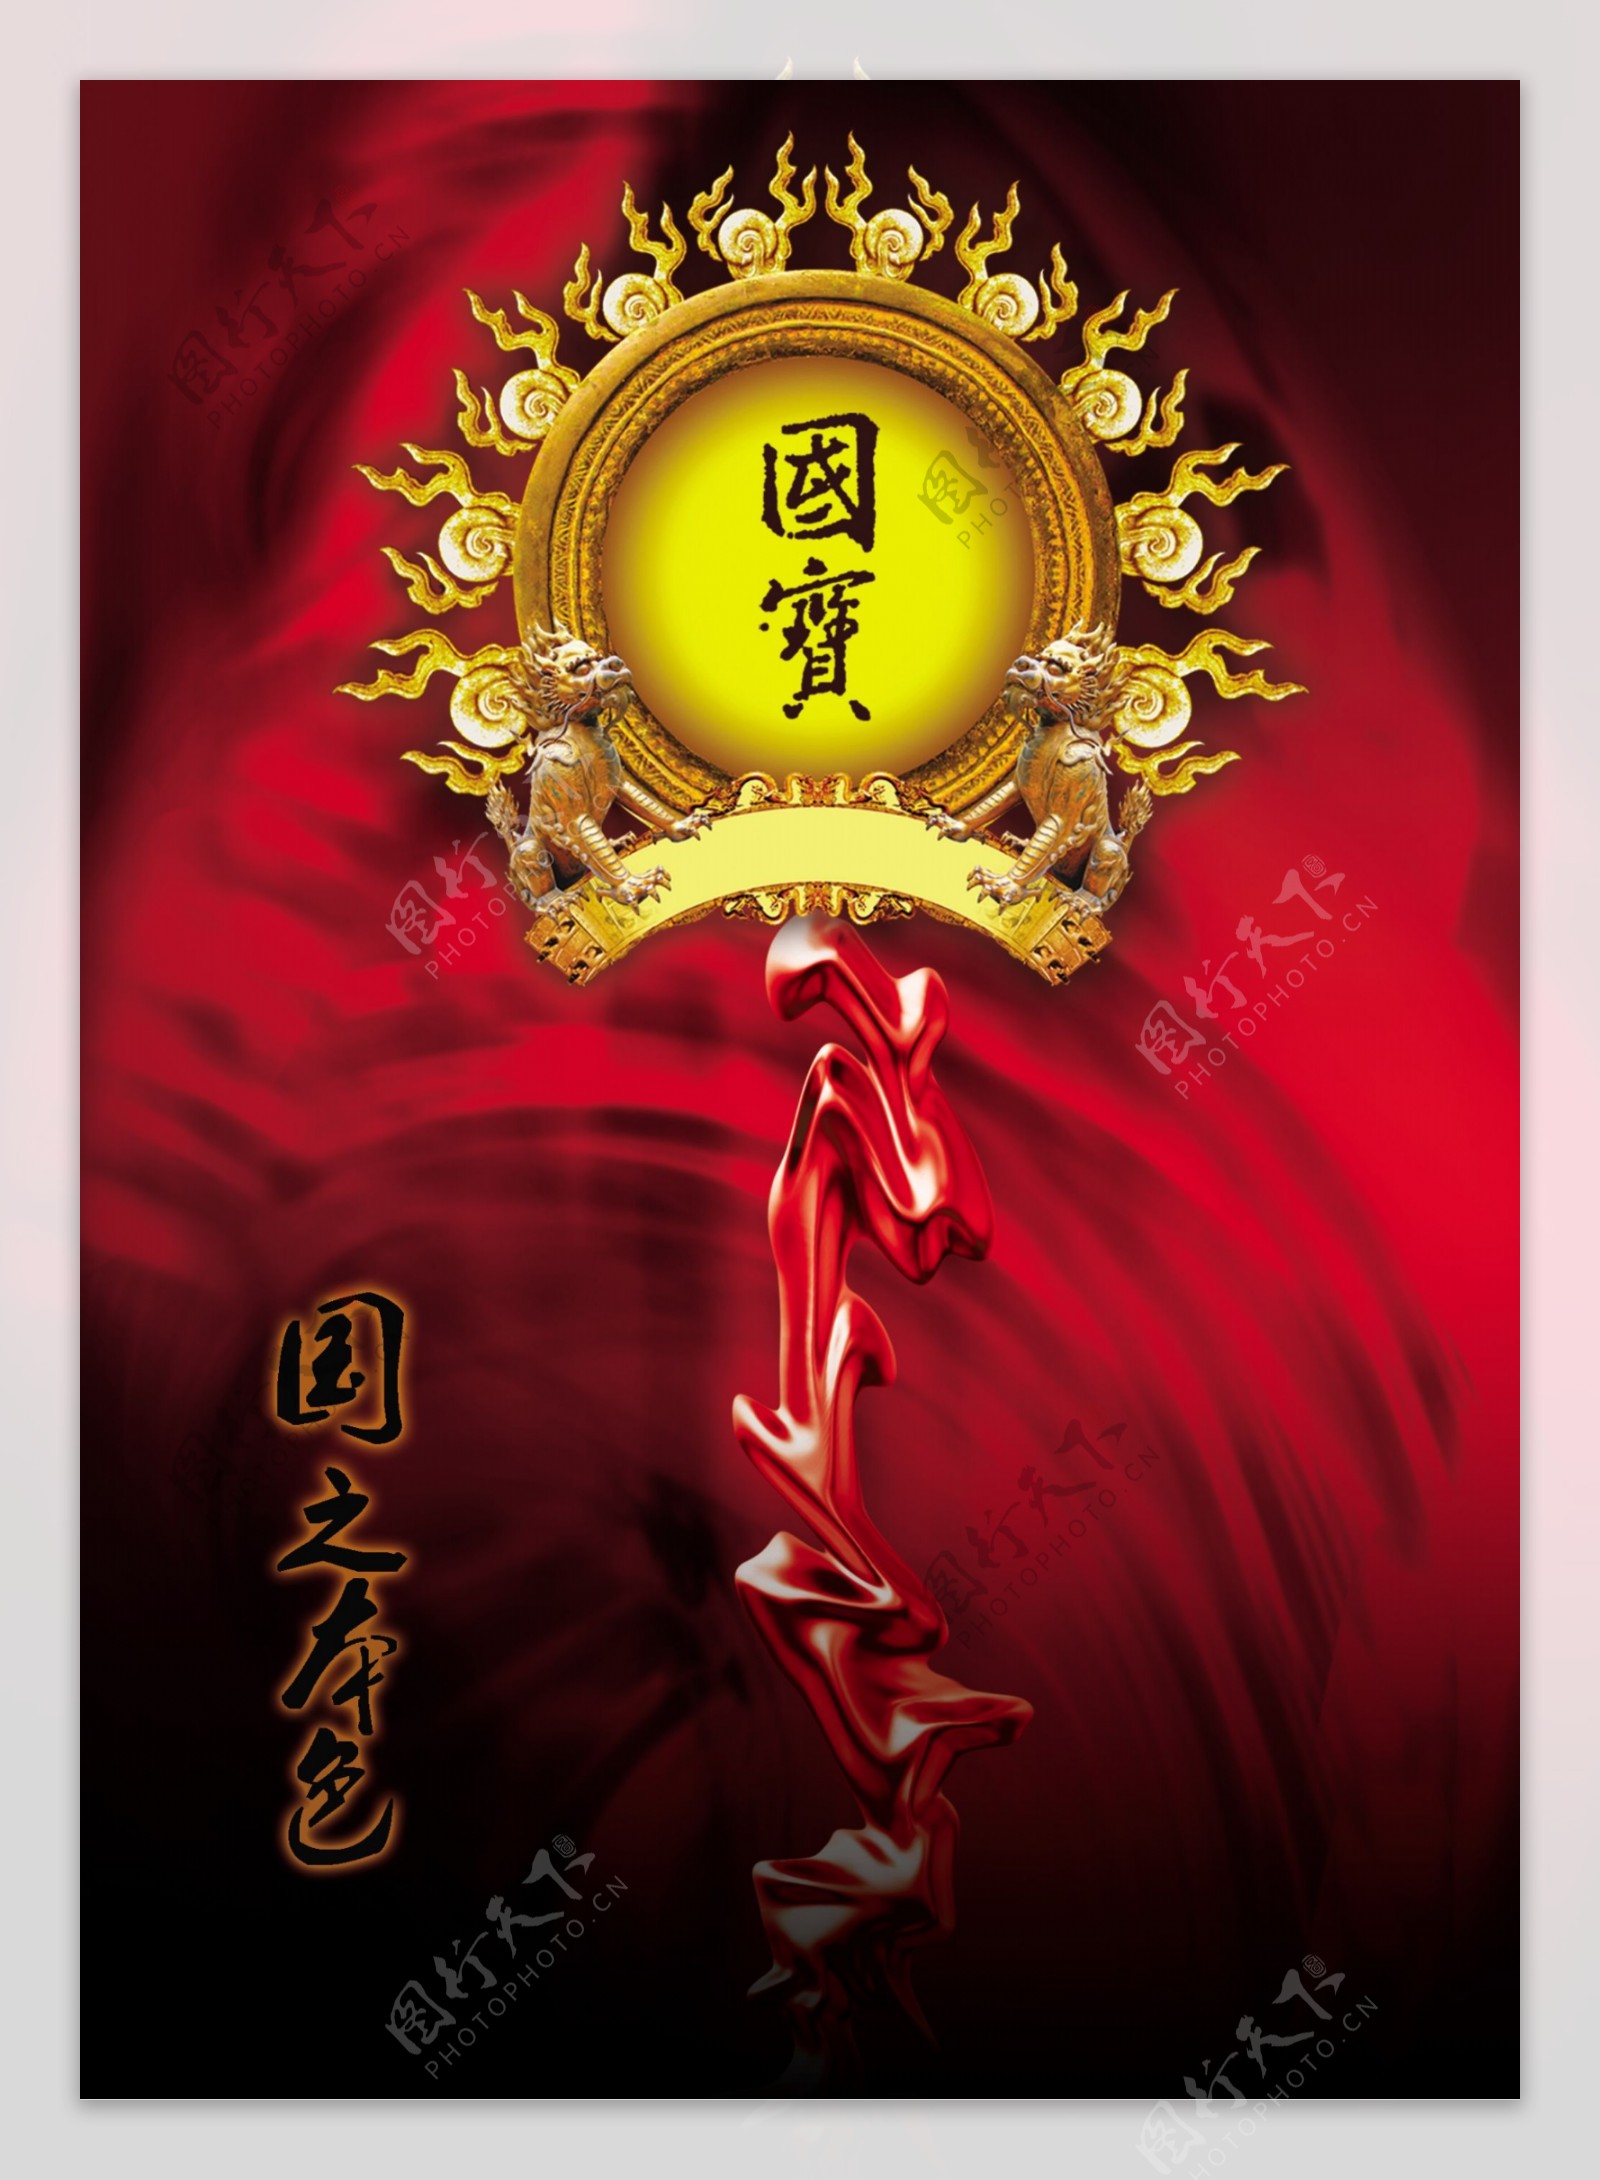 龙腾广告平面广告PSD分层素材源文件古典国宝国之本色红丝带